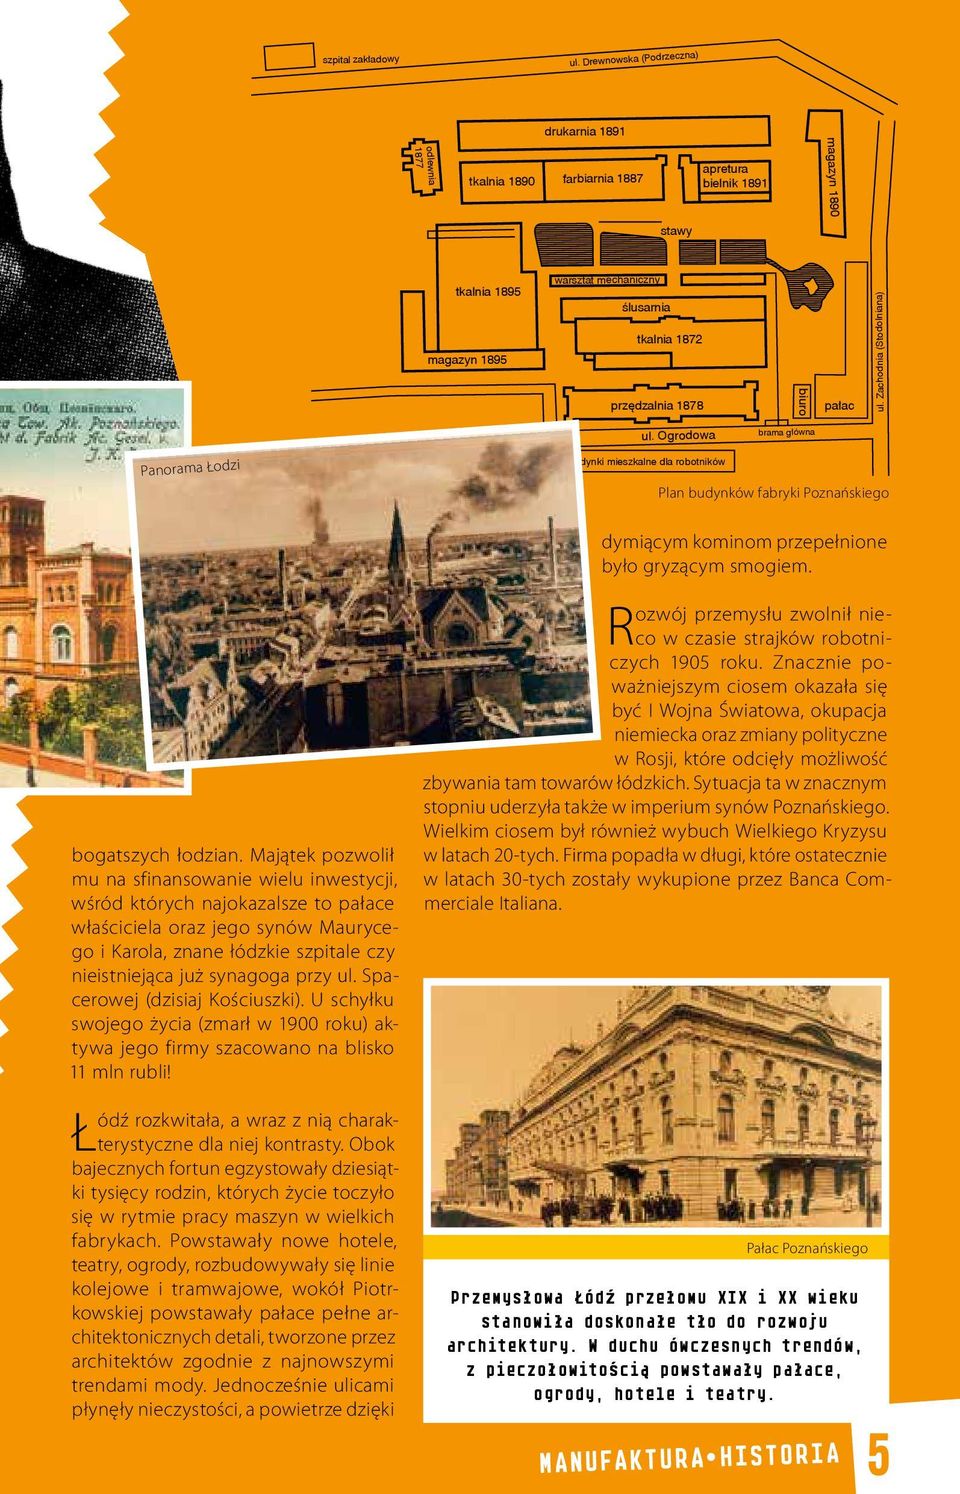 Zachodnia (Stodolniana) magazyn 1895 tkalnia 1872 przędzalnia 1878 pałac ul.